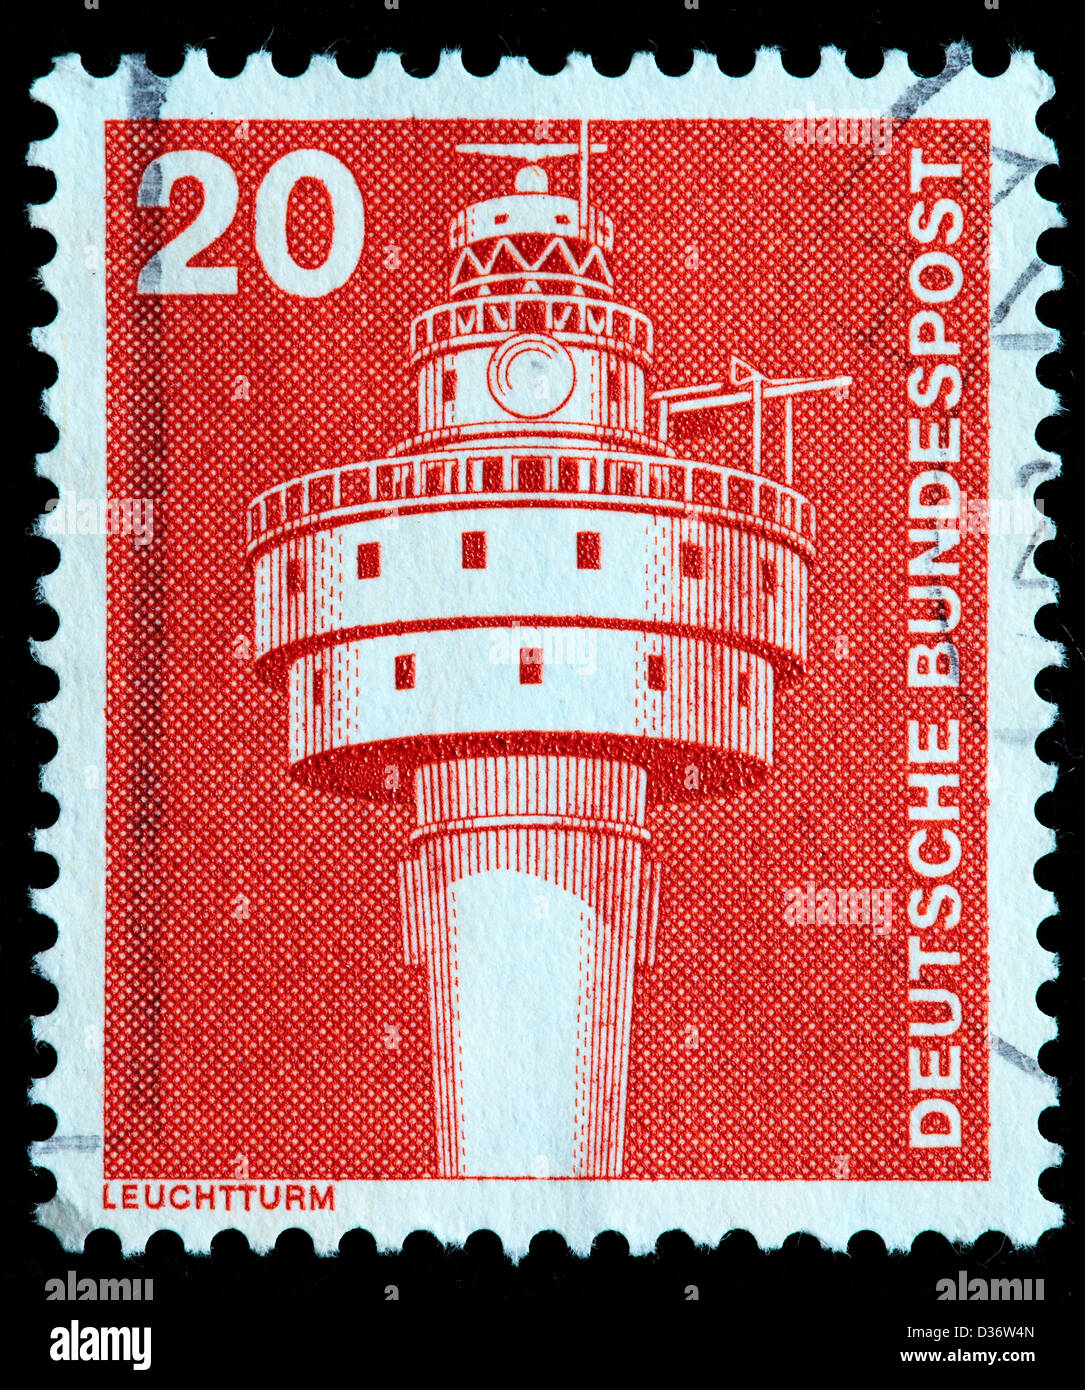 Vieux phare de la Weser, timbre-poste, Allemagne, 1975 Banque D'Images